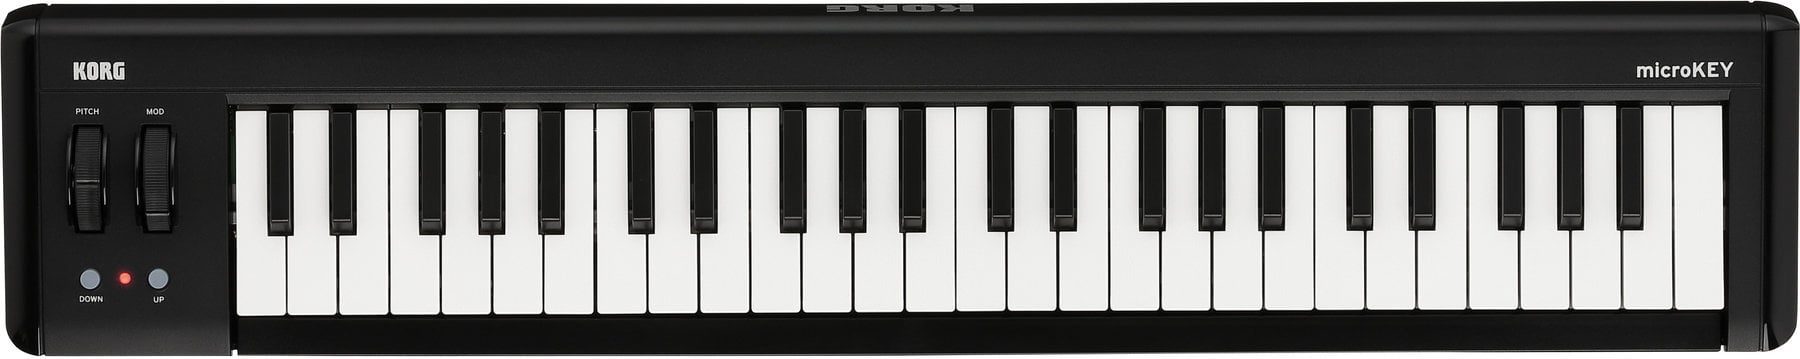 MIDI keyboard Korg MicroKEY Air 49